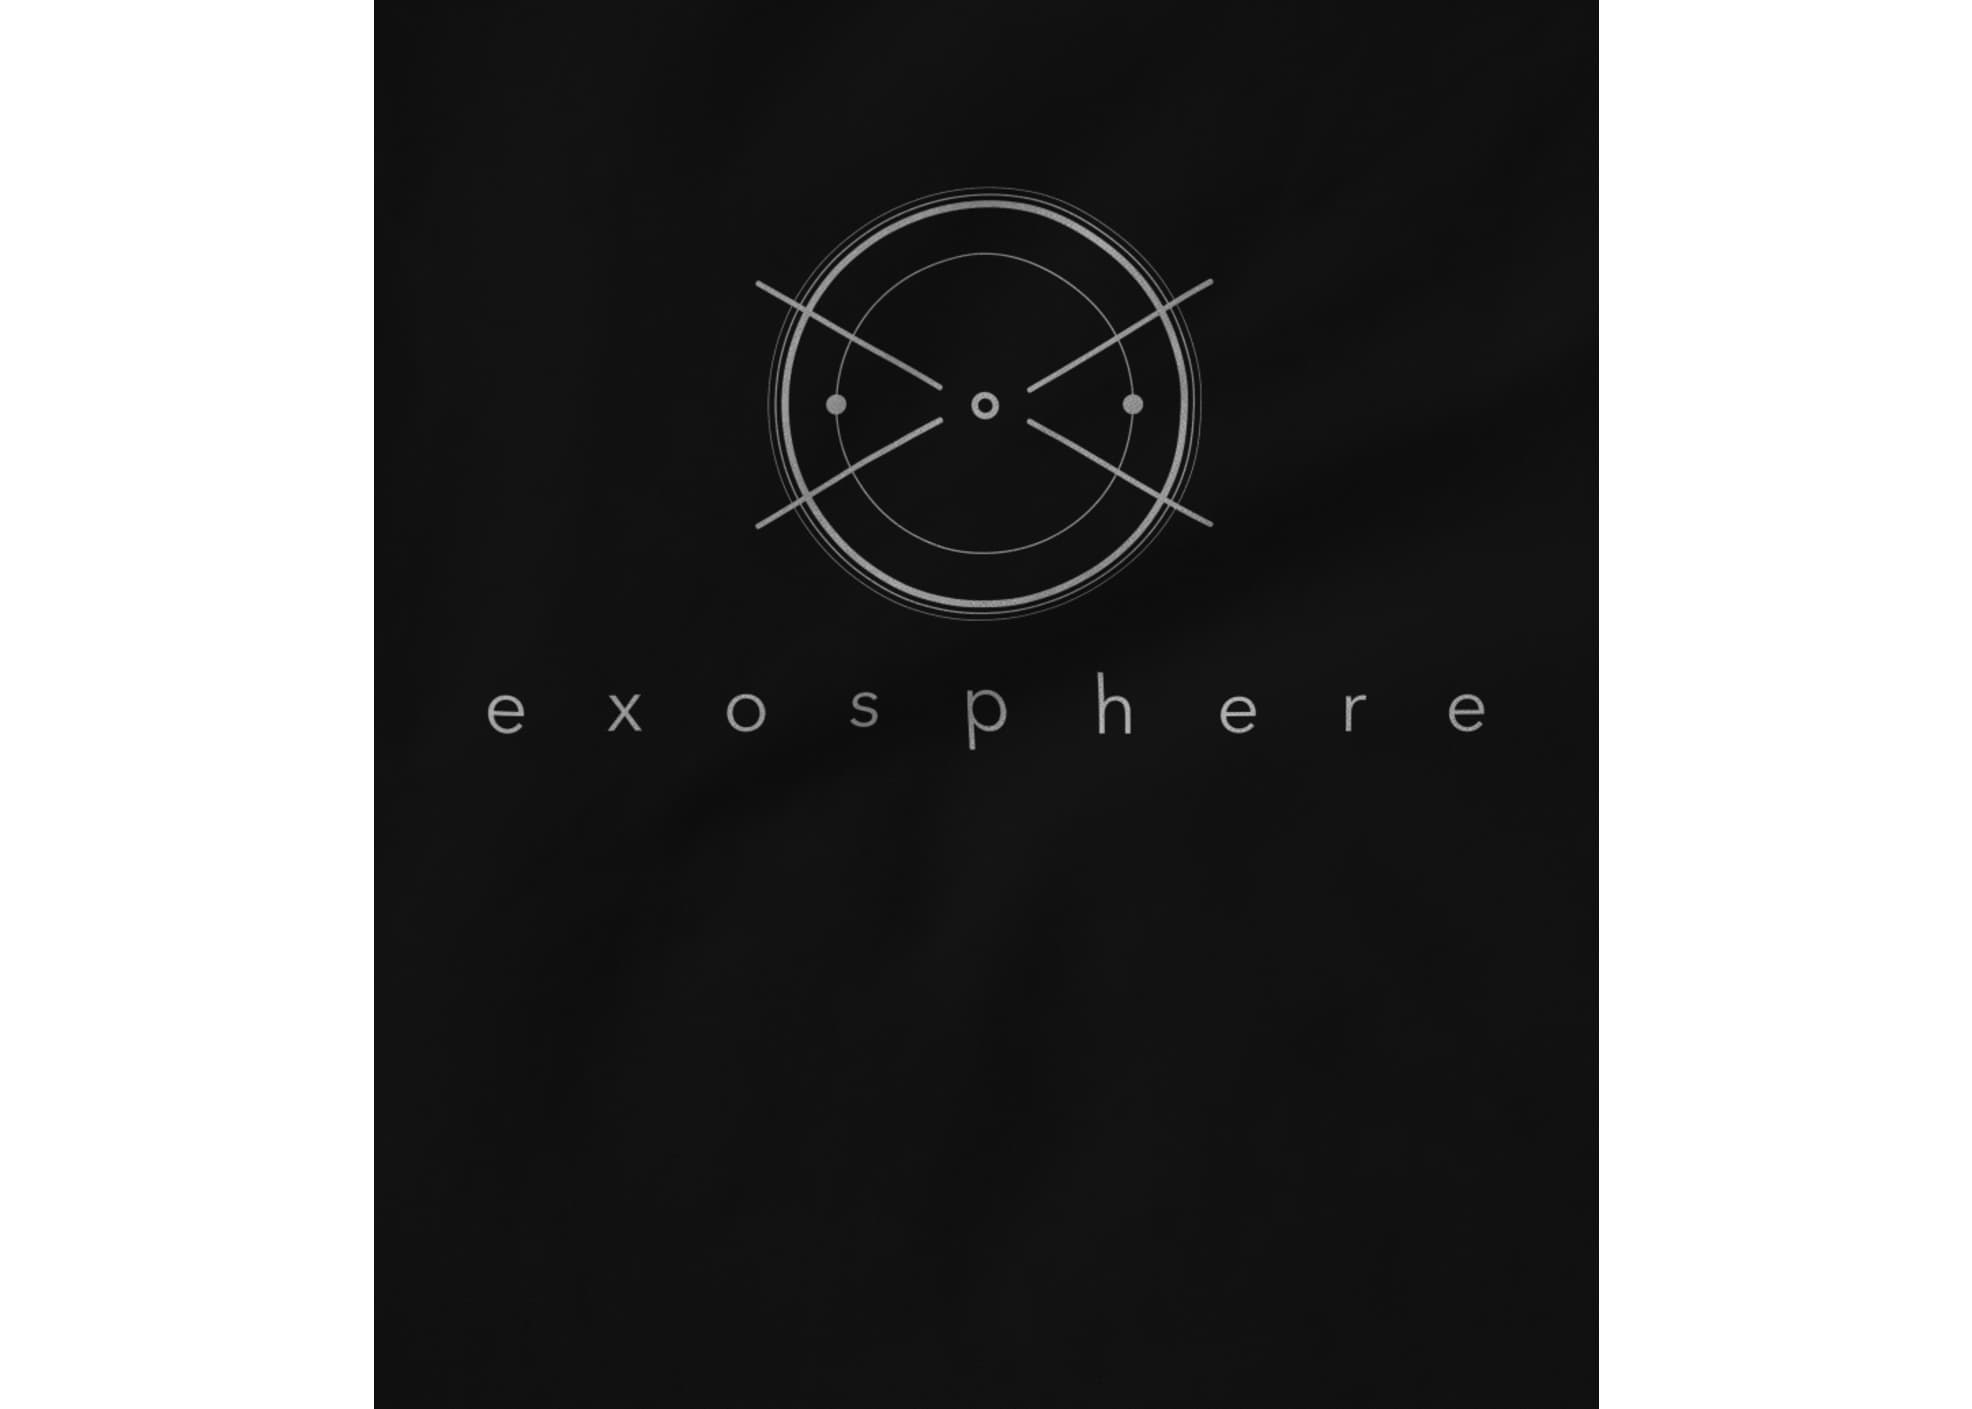 Exosphere exo logo design 1 1536469747